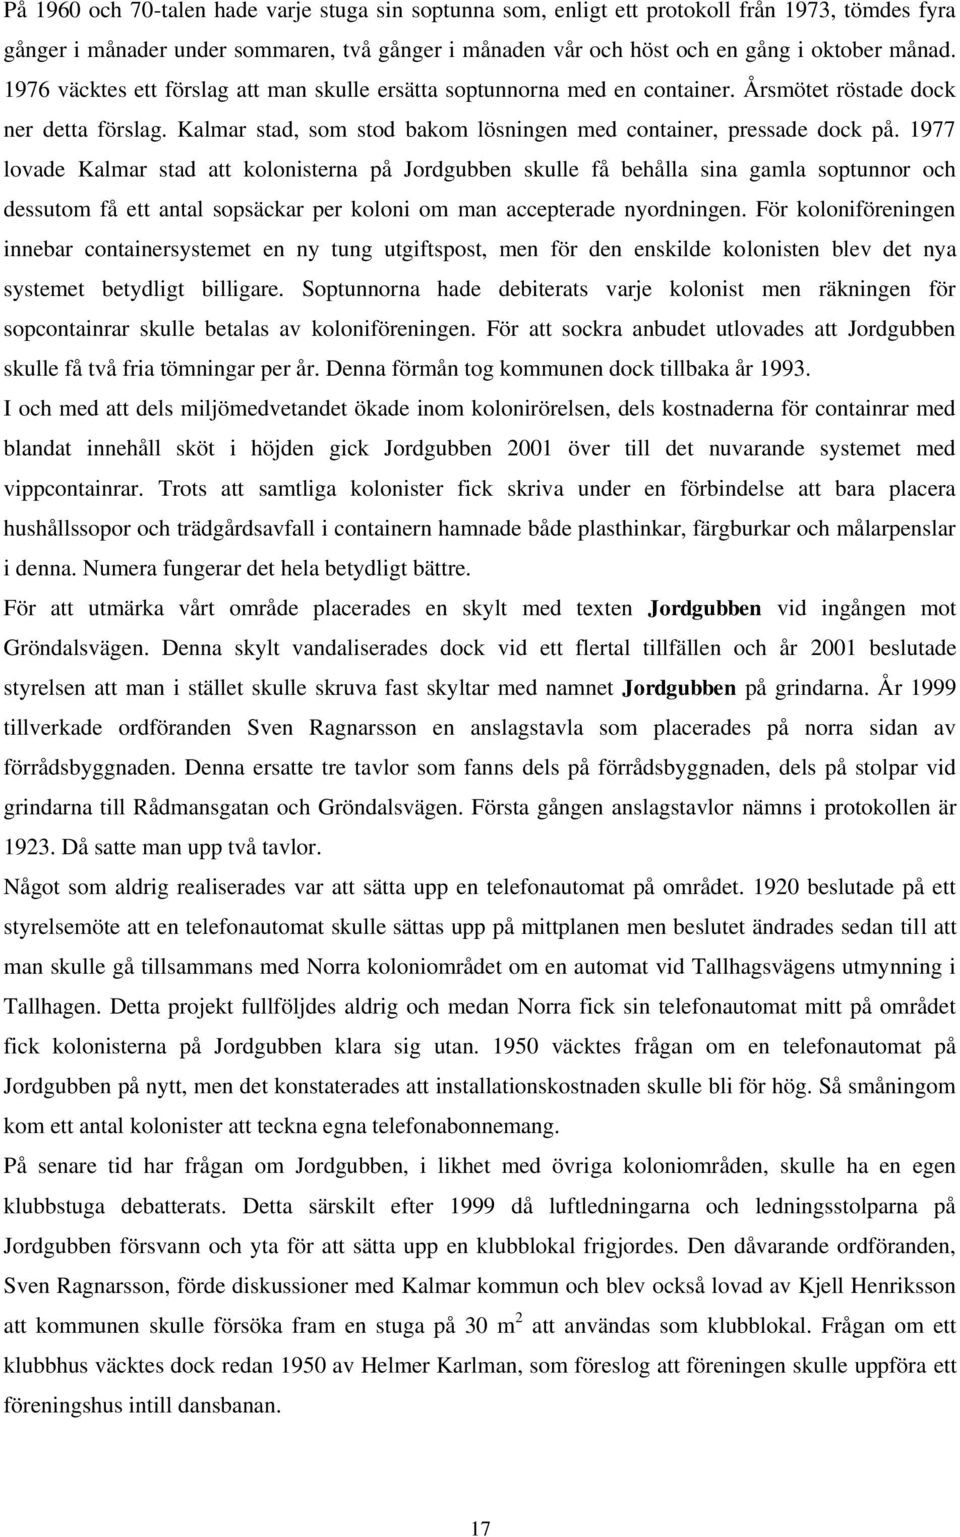 1977 lovade Kalmar stad att kolonisterna på Jordgubben skulle få behålla sina gamla soptunnor och dessutom få ett antal sopsäckar per koloni om man accepterade nyordningen.